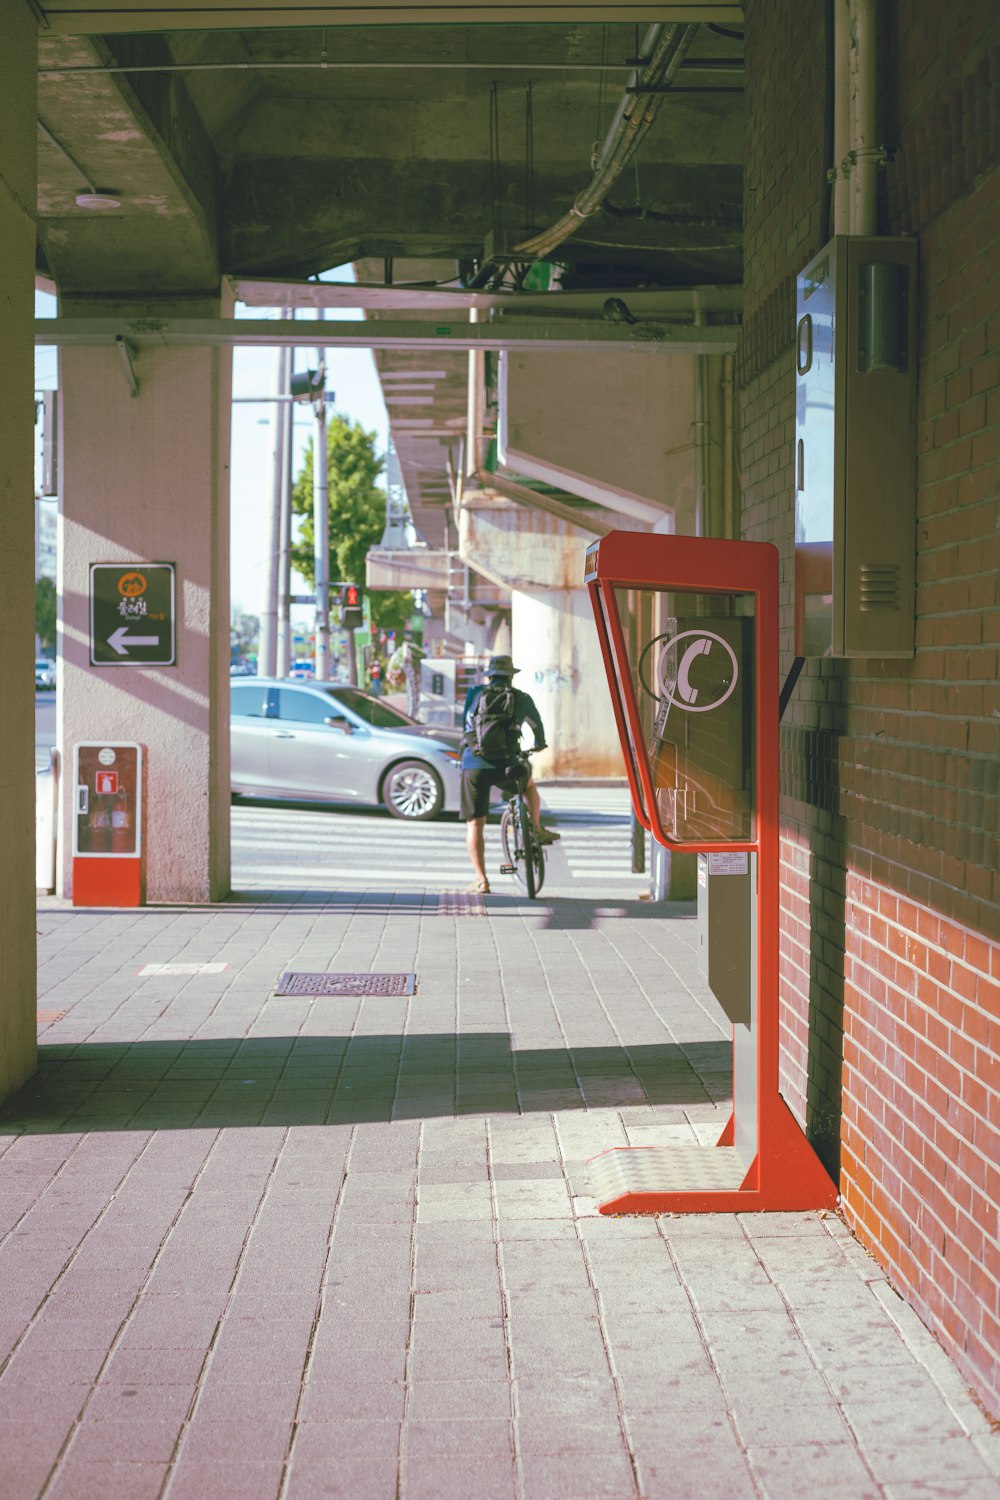 a man riding a bike down a sidewalk next to a parking meter